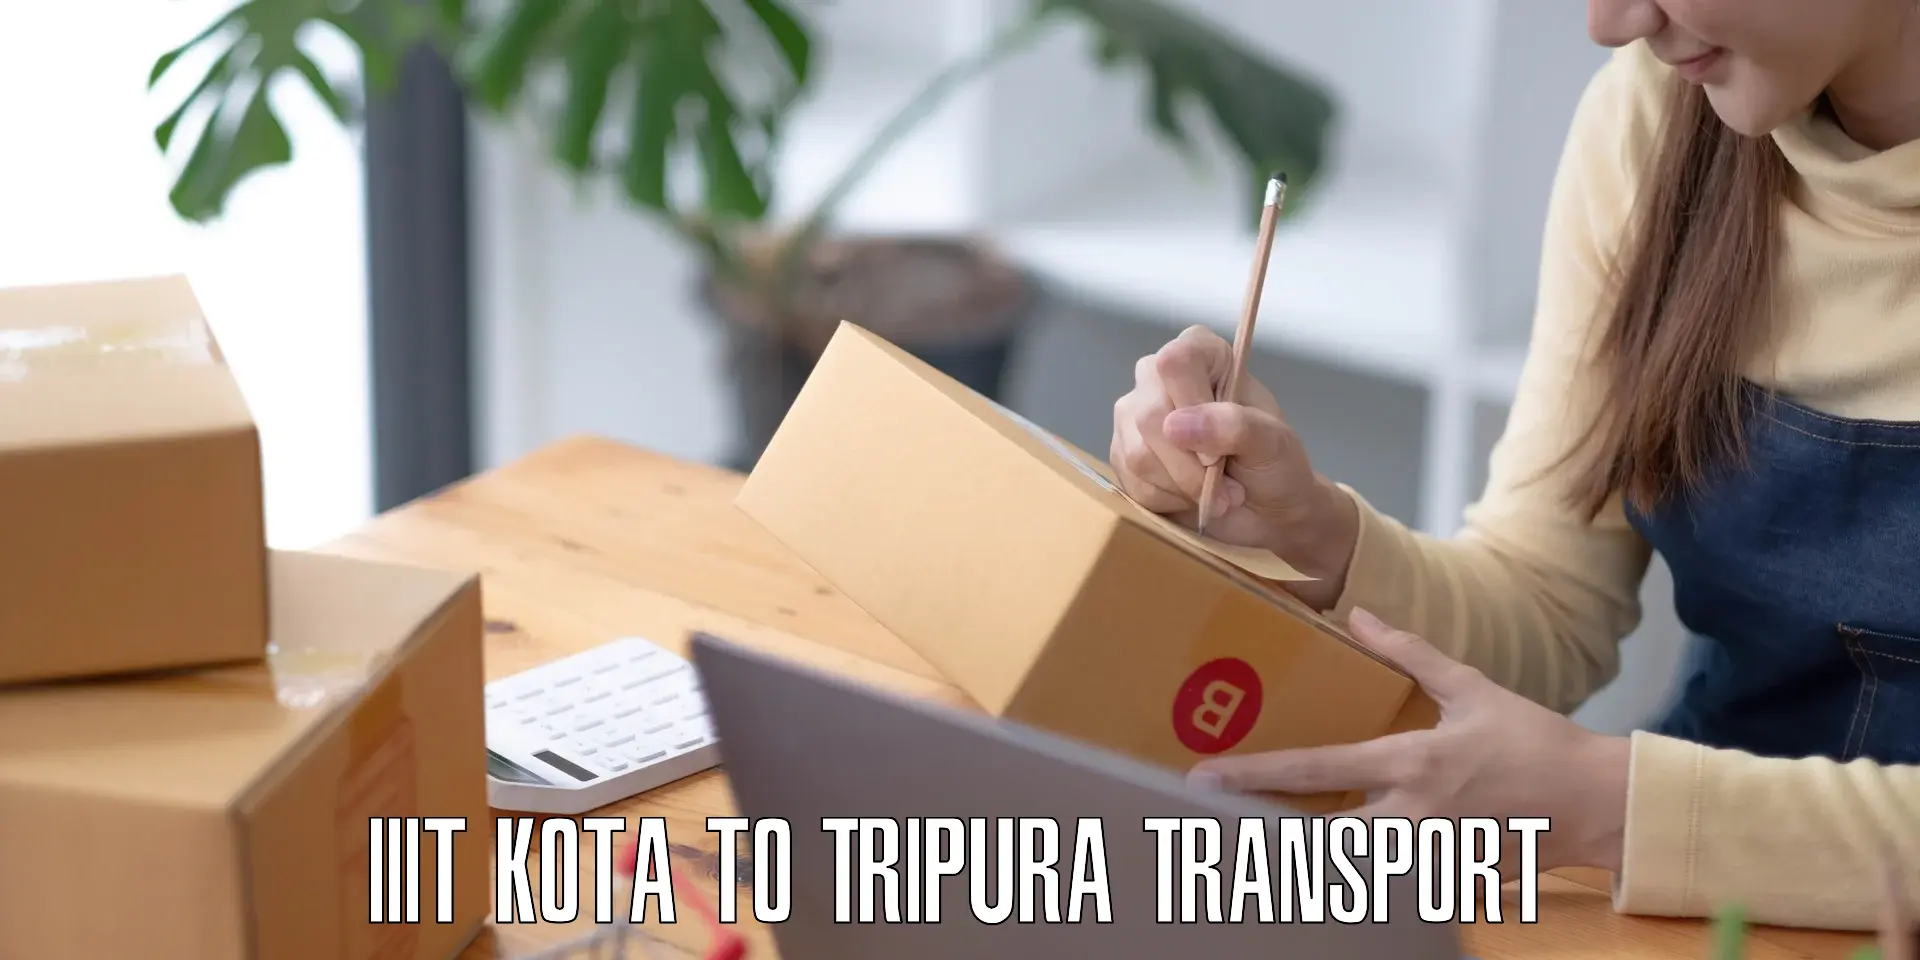 Transportation services IIIT Kota to Kamalpur